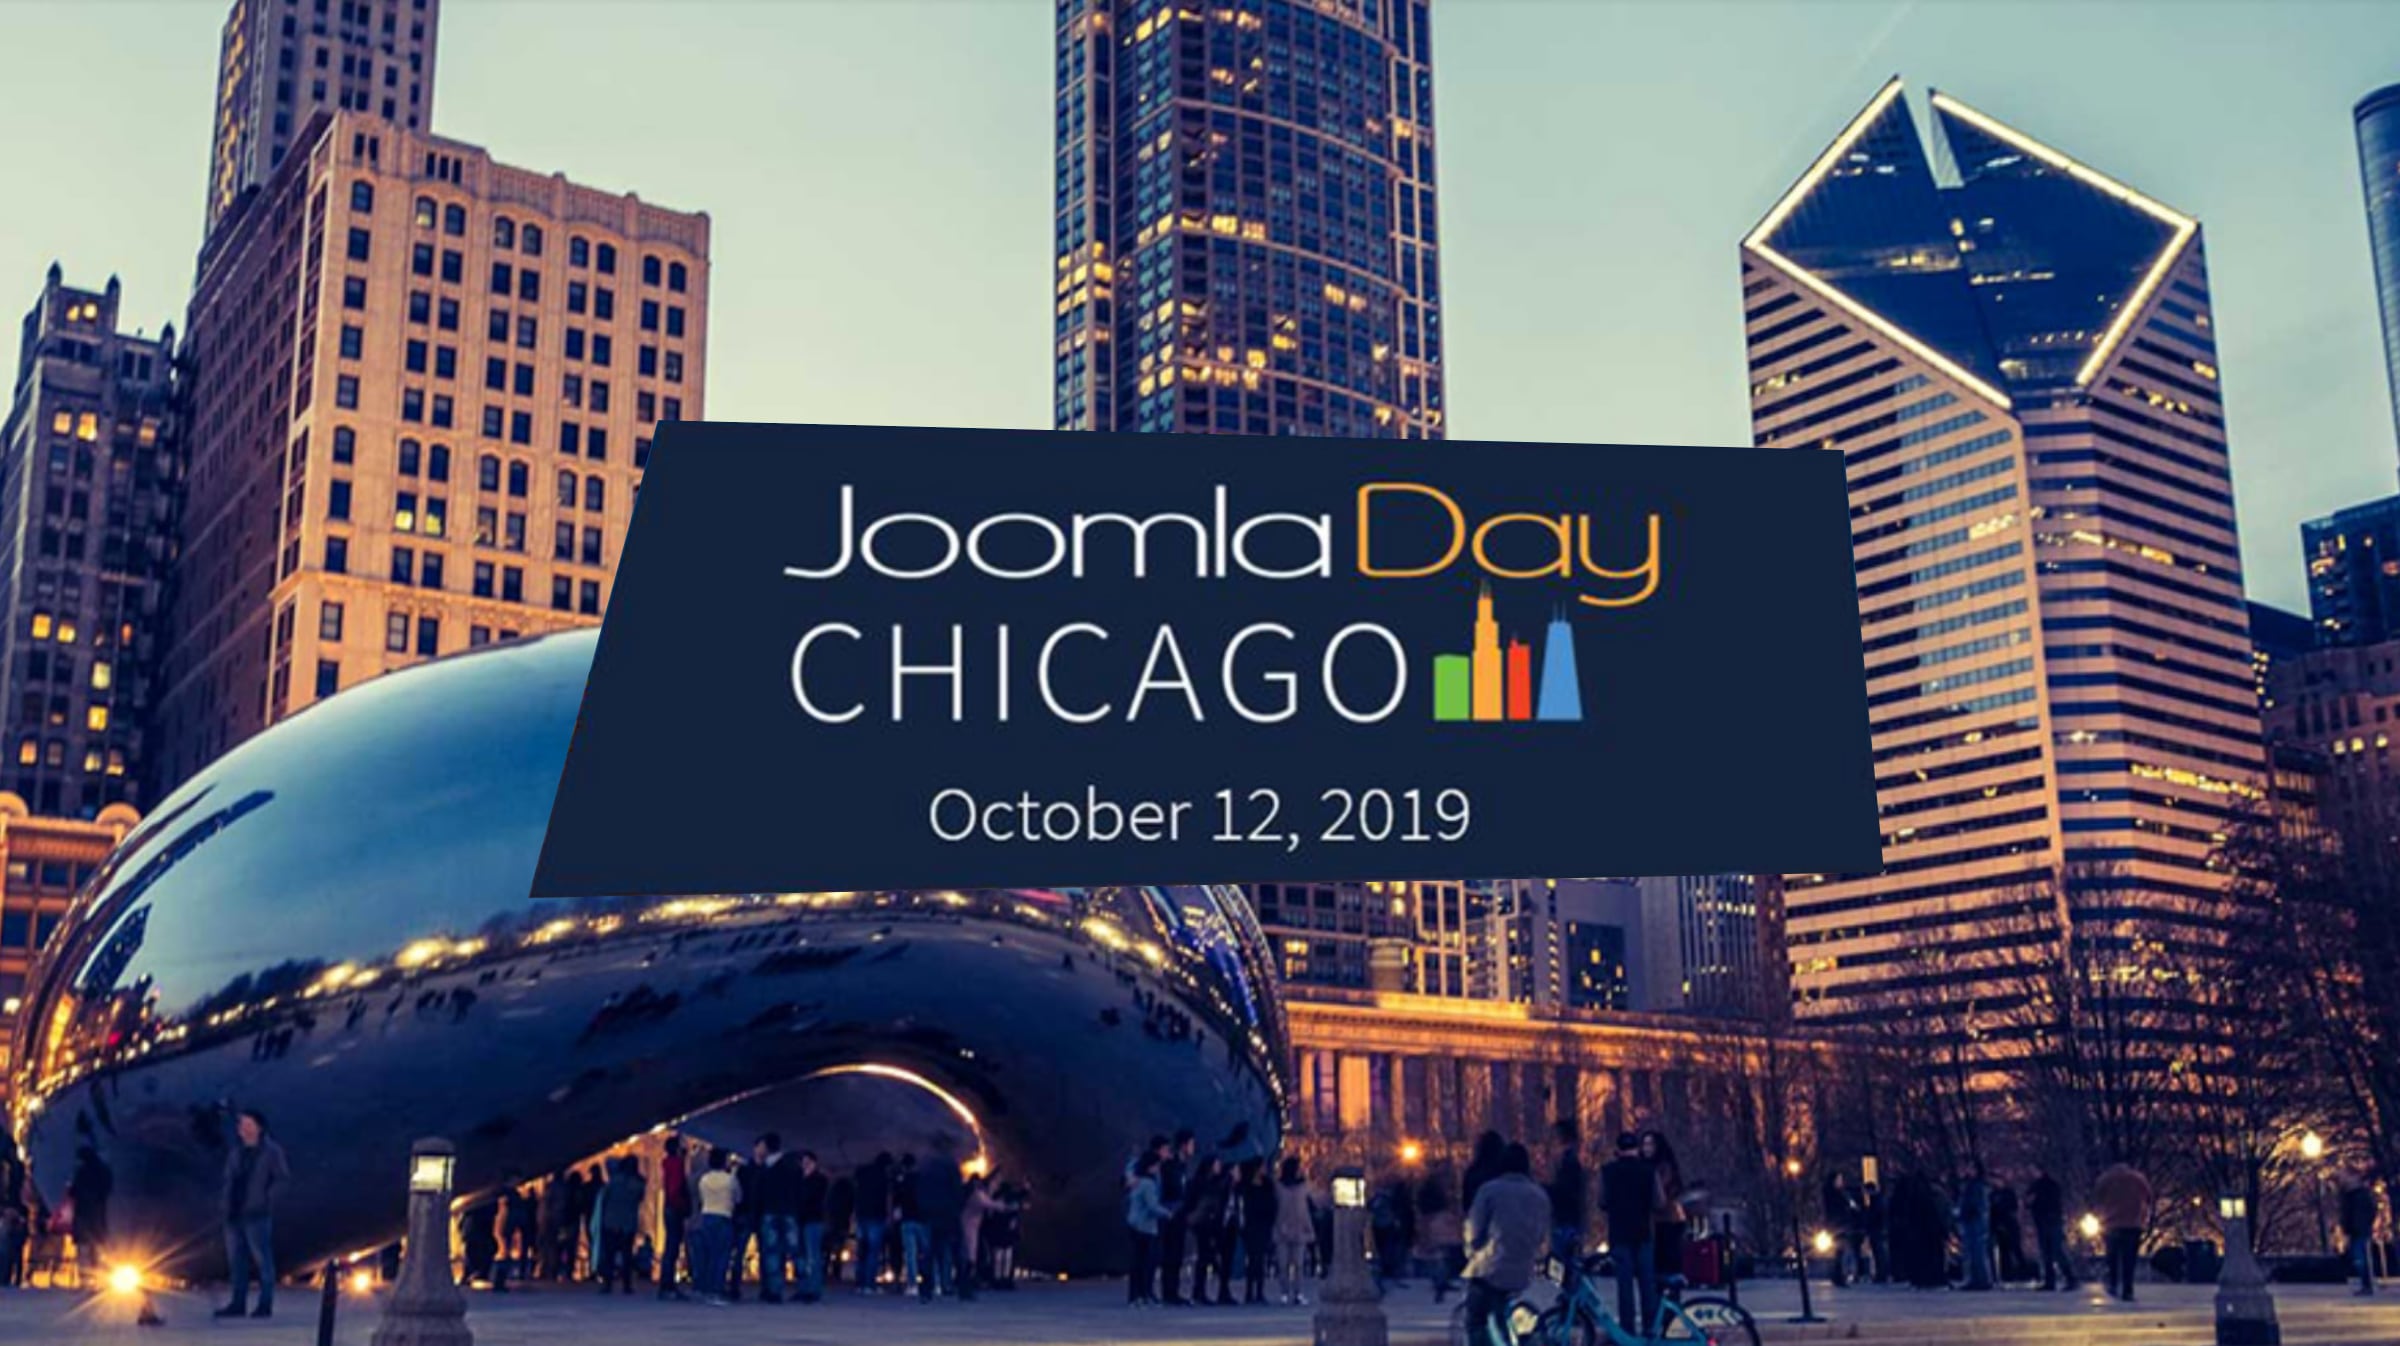 JoomlaDay Chicago